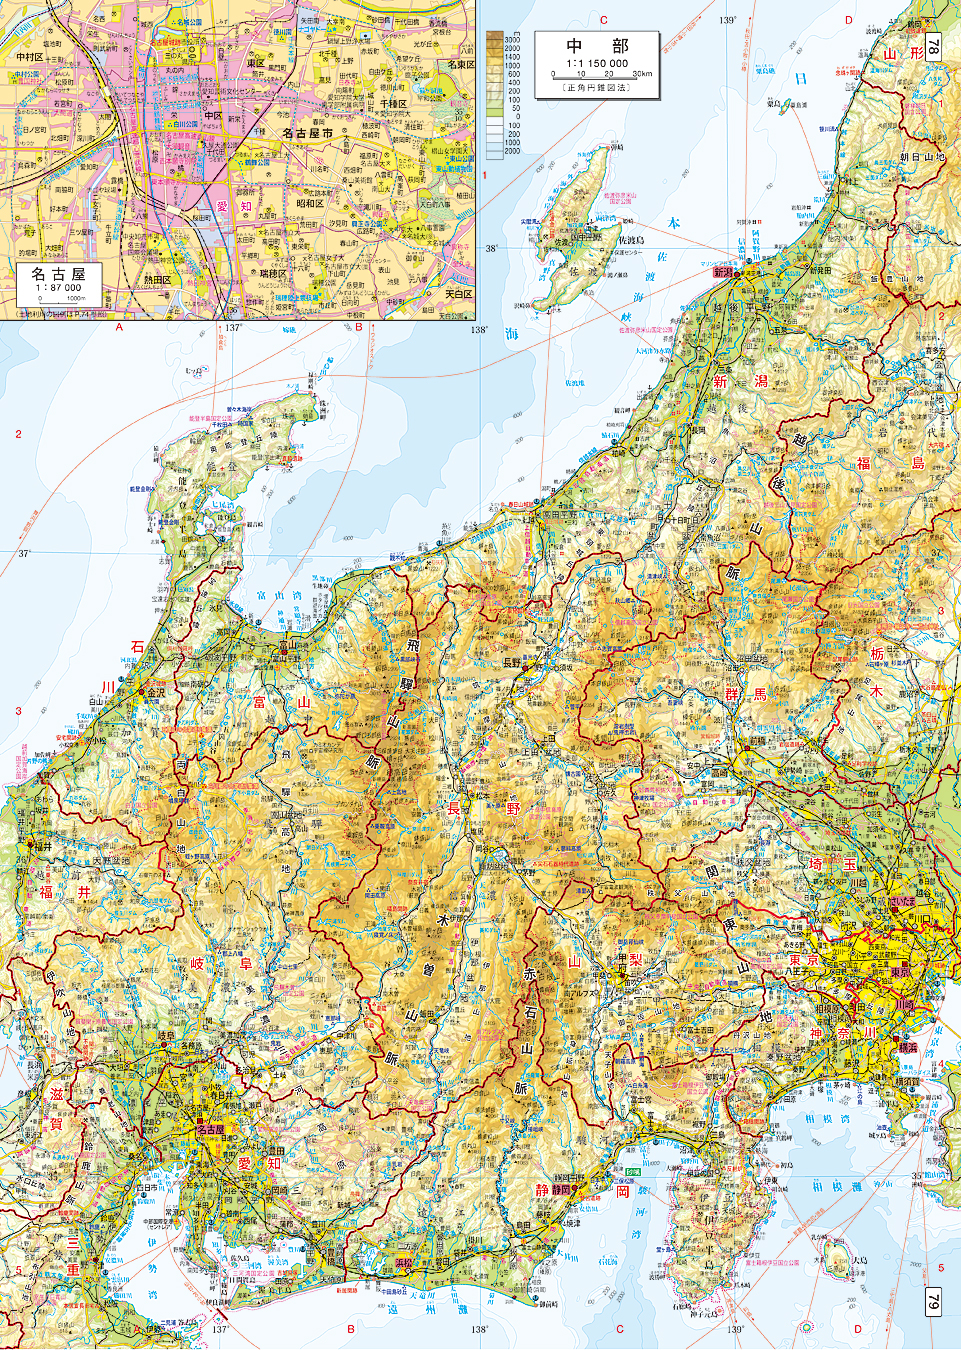 新潟県全域を含めた中部地方